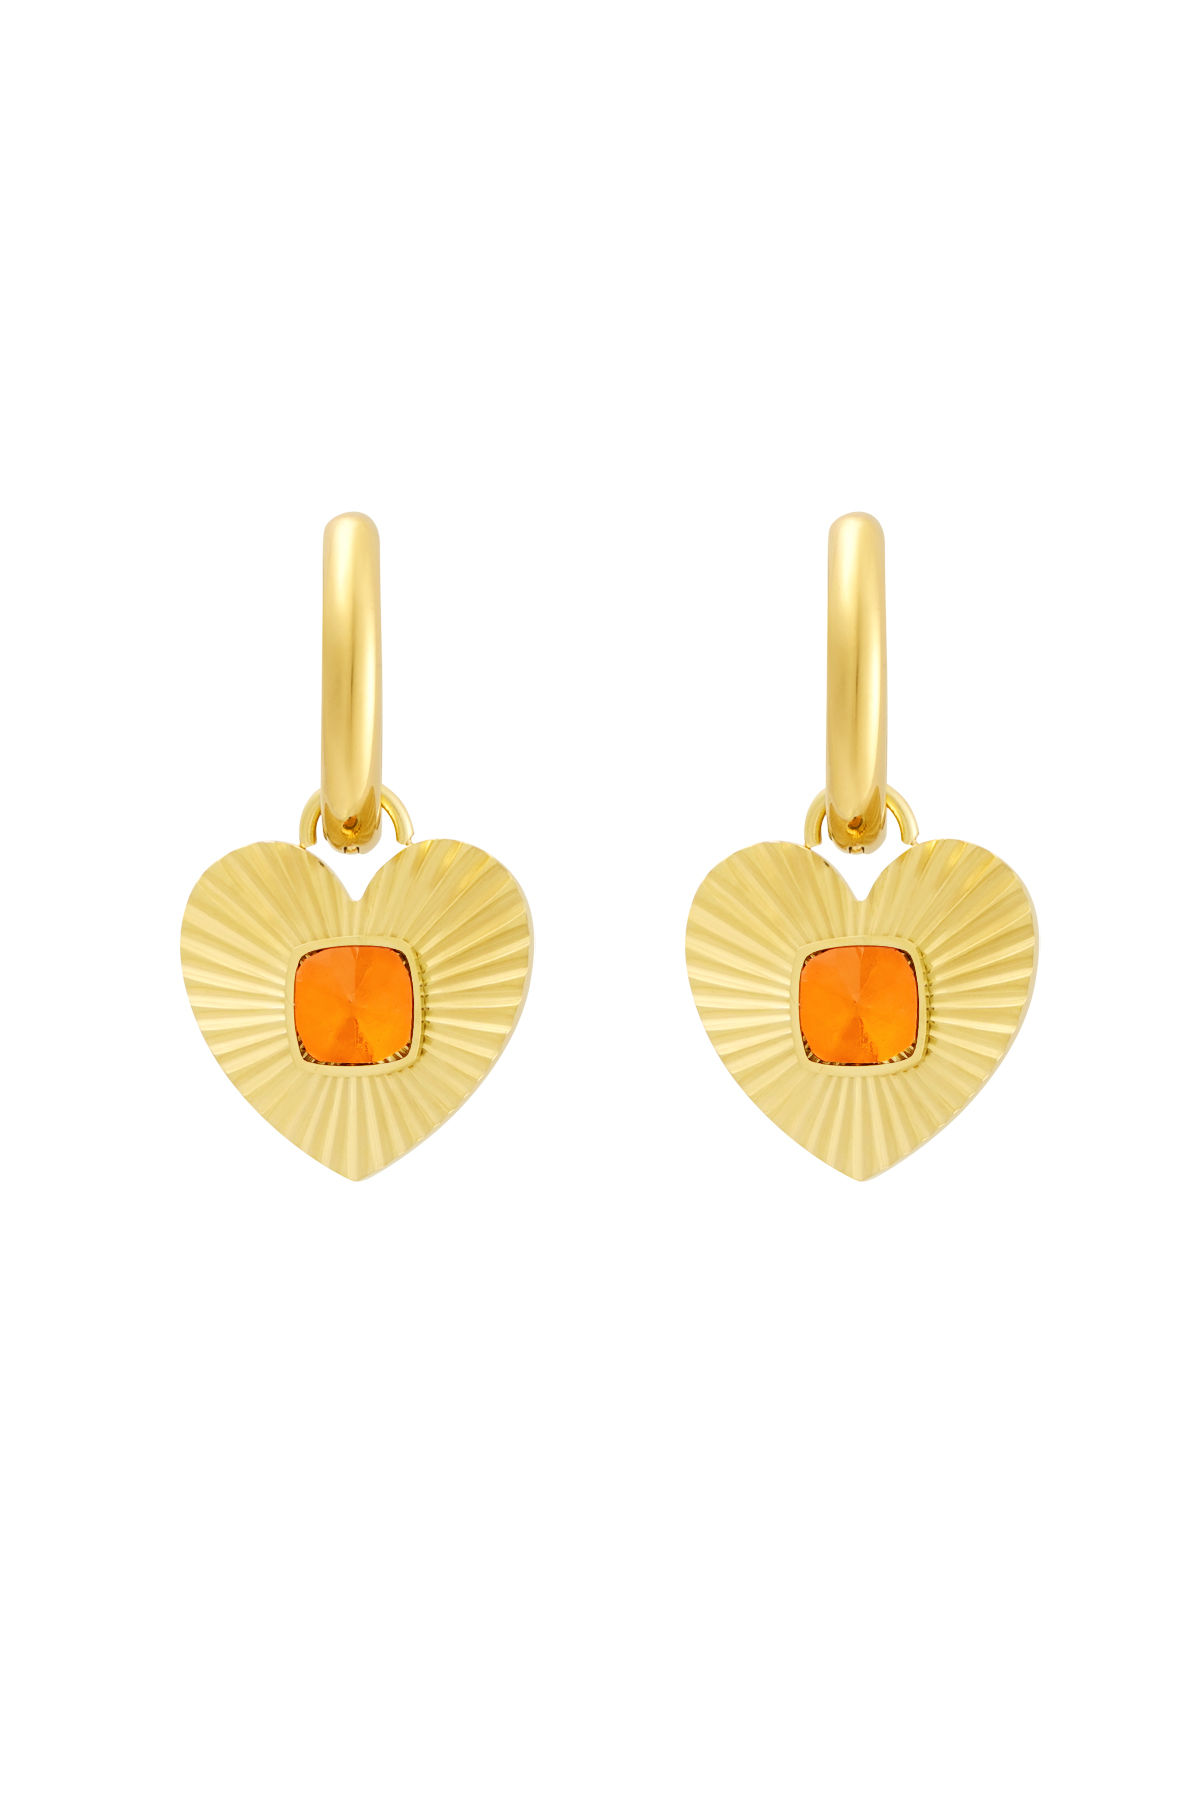 Ohrringe Herz mit Stein - Gold/Orange